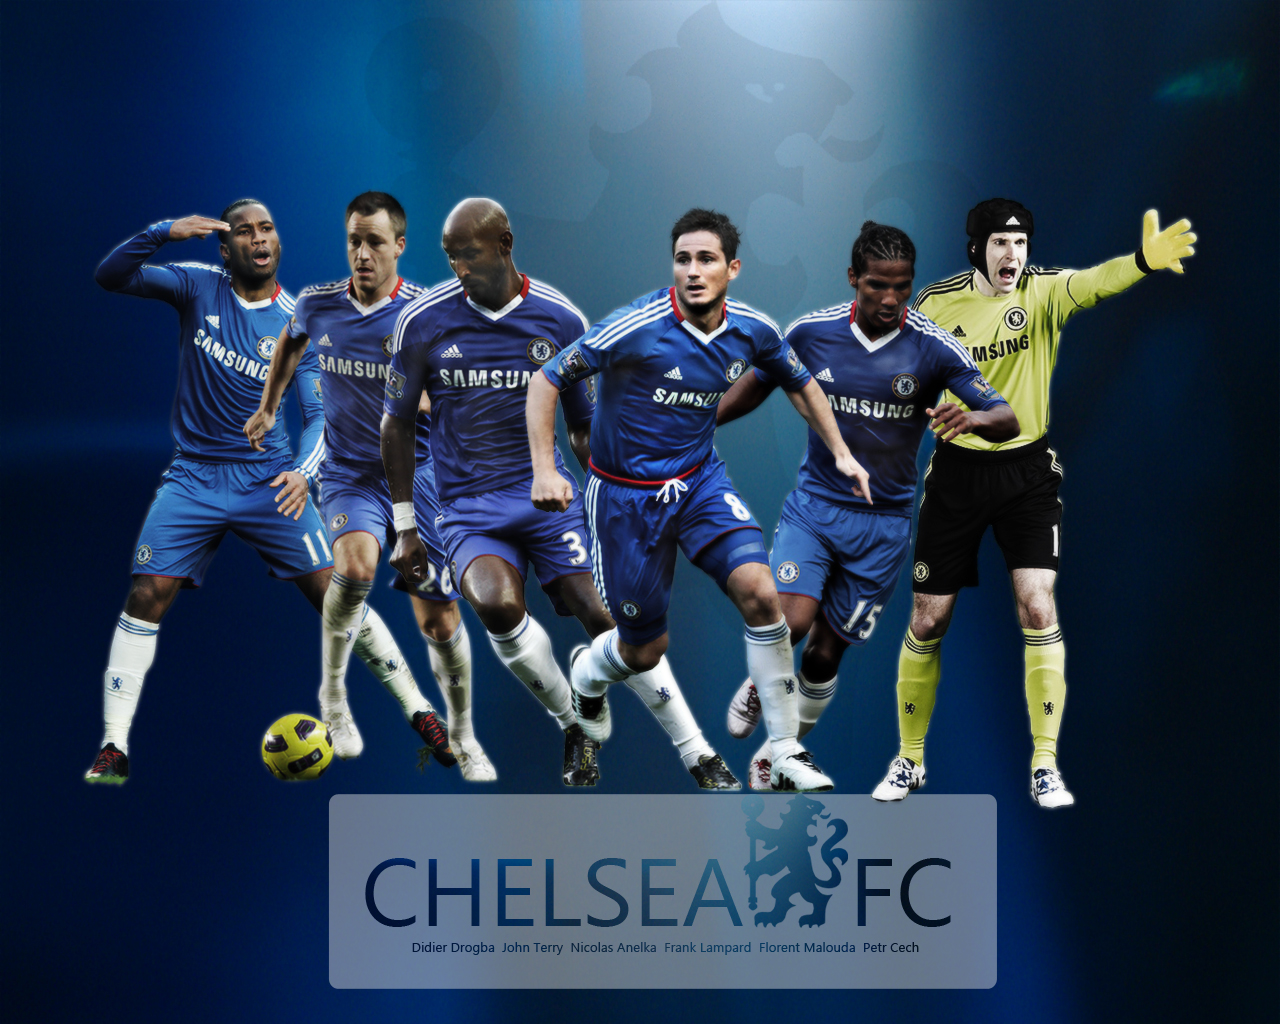 Chelsea Fc Team Wallpaper Imagebank Biz